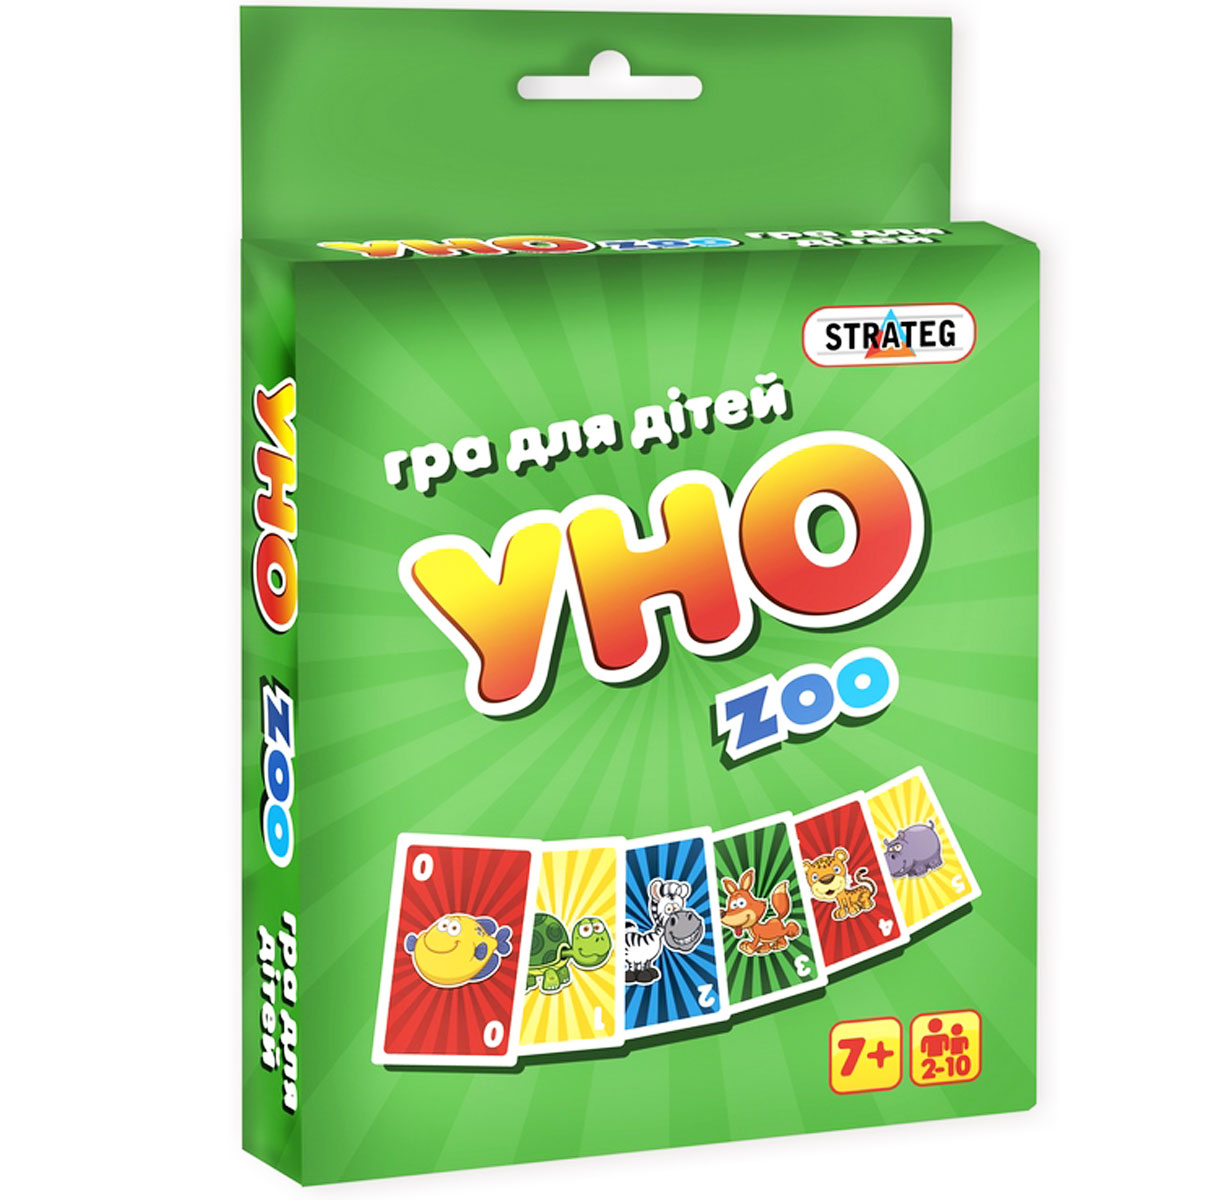 Игра для детей 'Уно zoo'